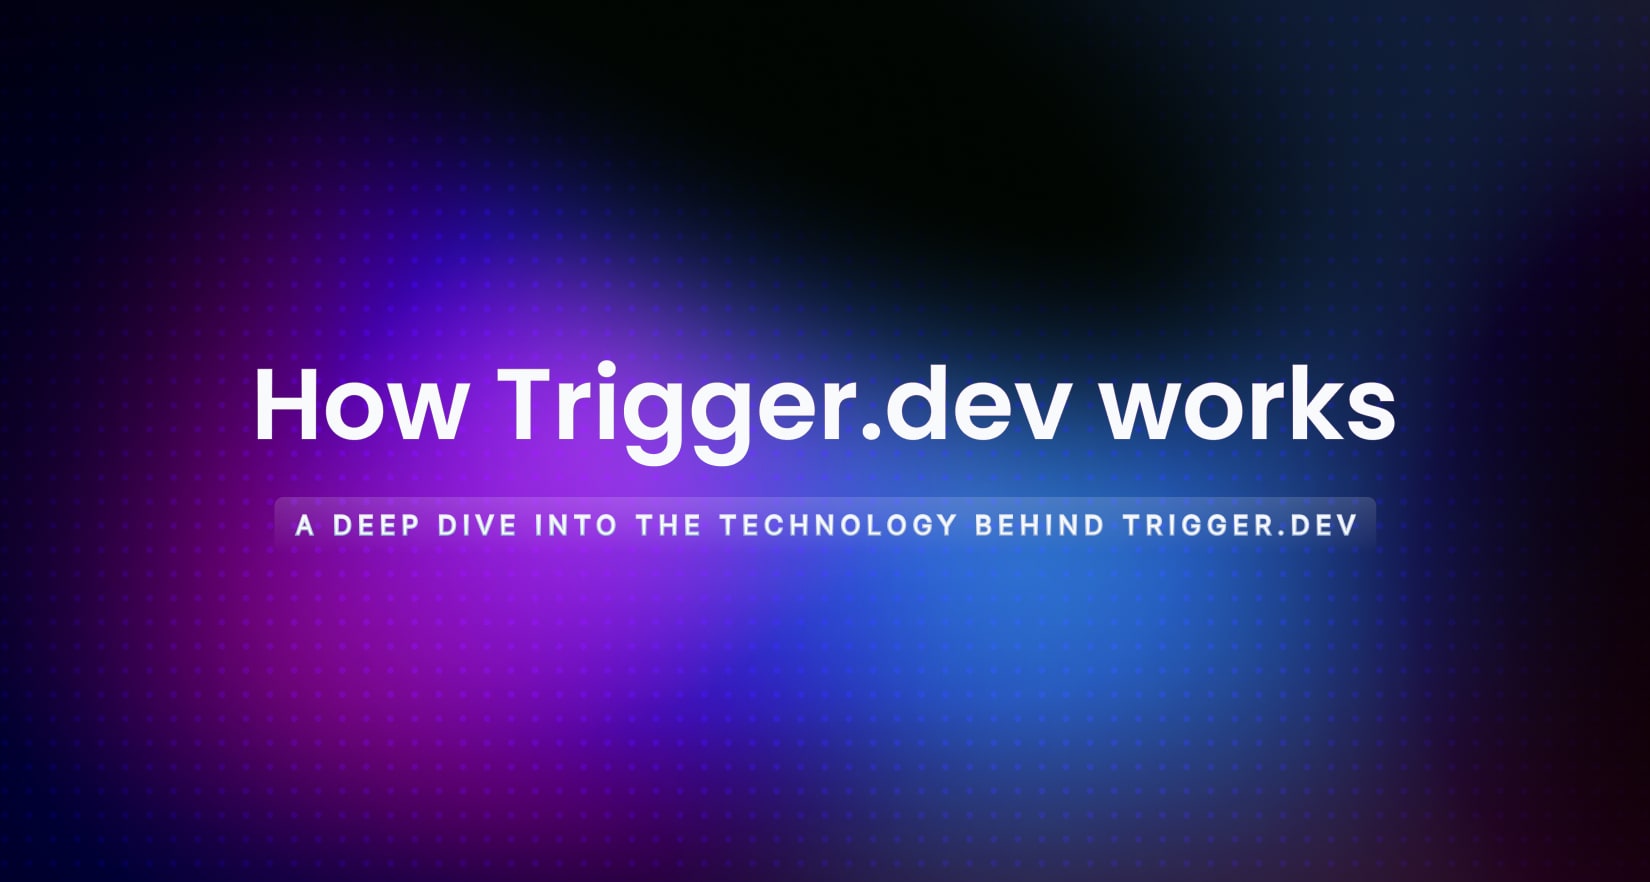 Deep Dive: How Trigger.dev works